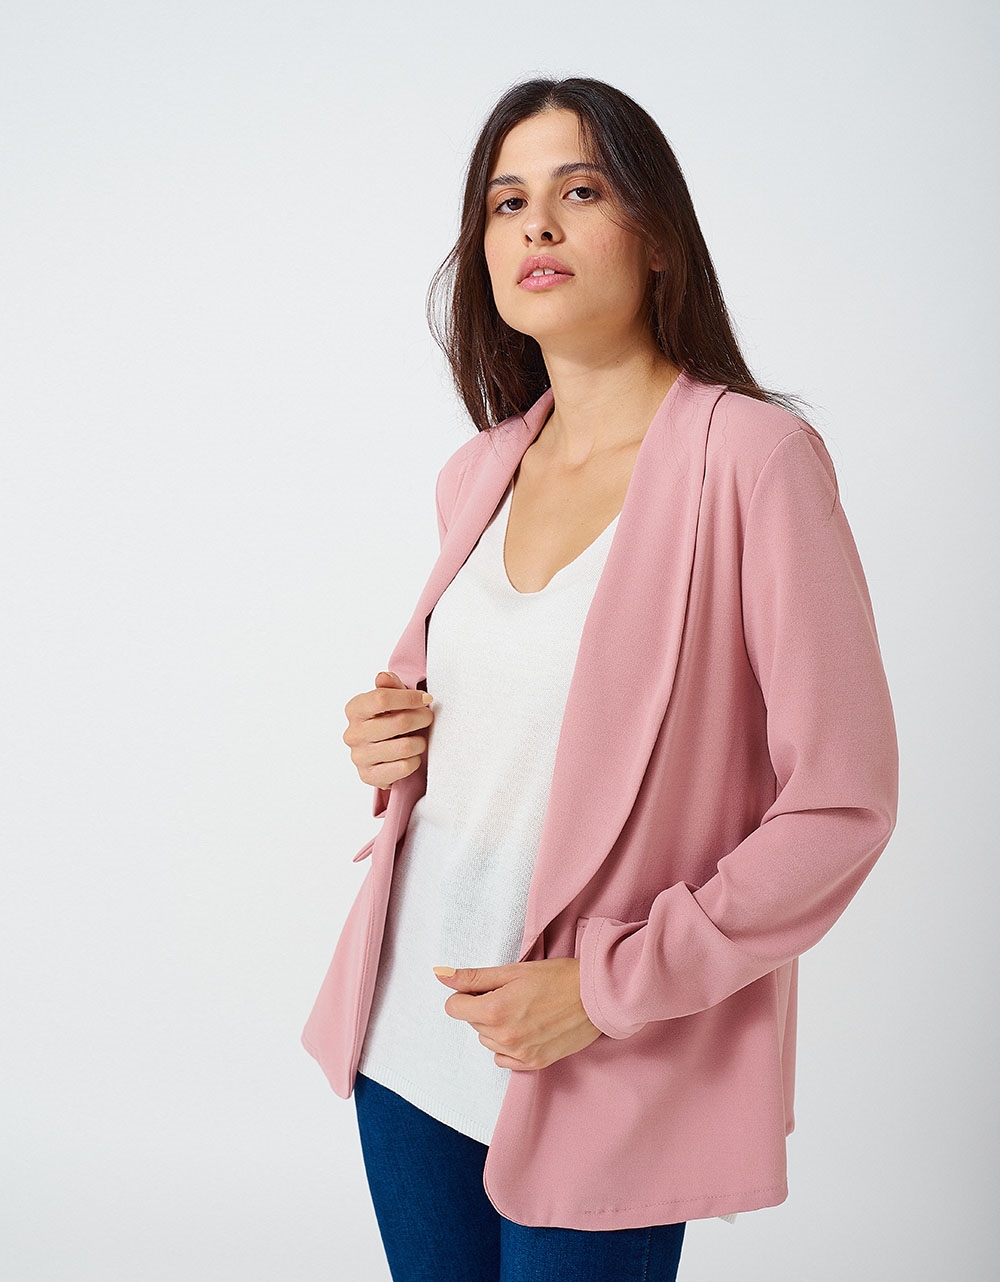 Εικόνα από Γυναικείο blazer με τσέπες Ροζ